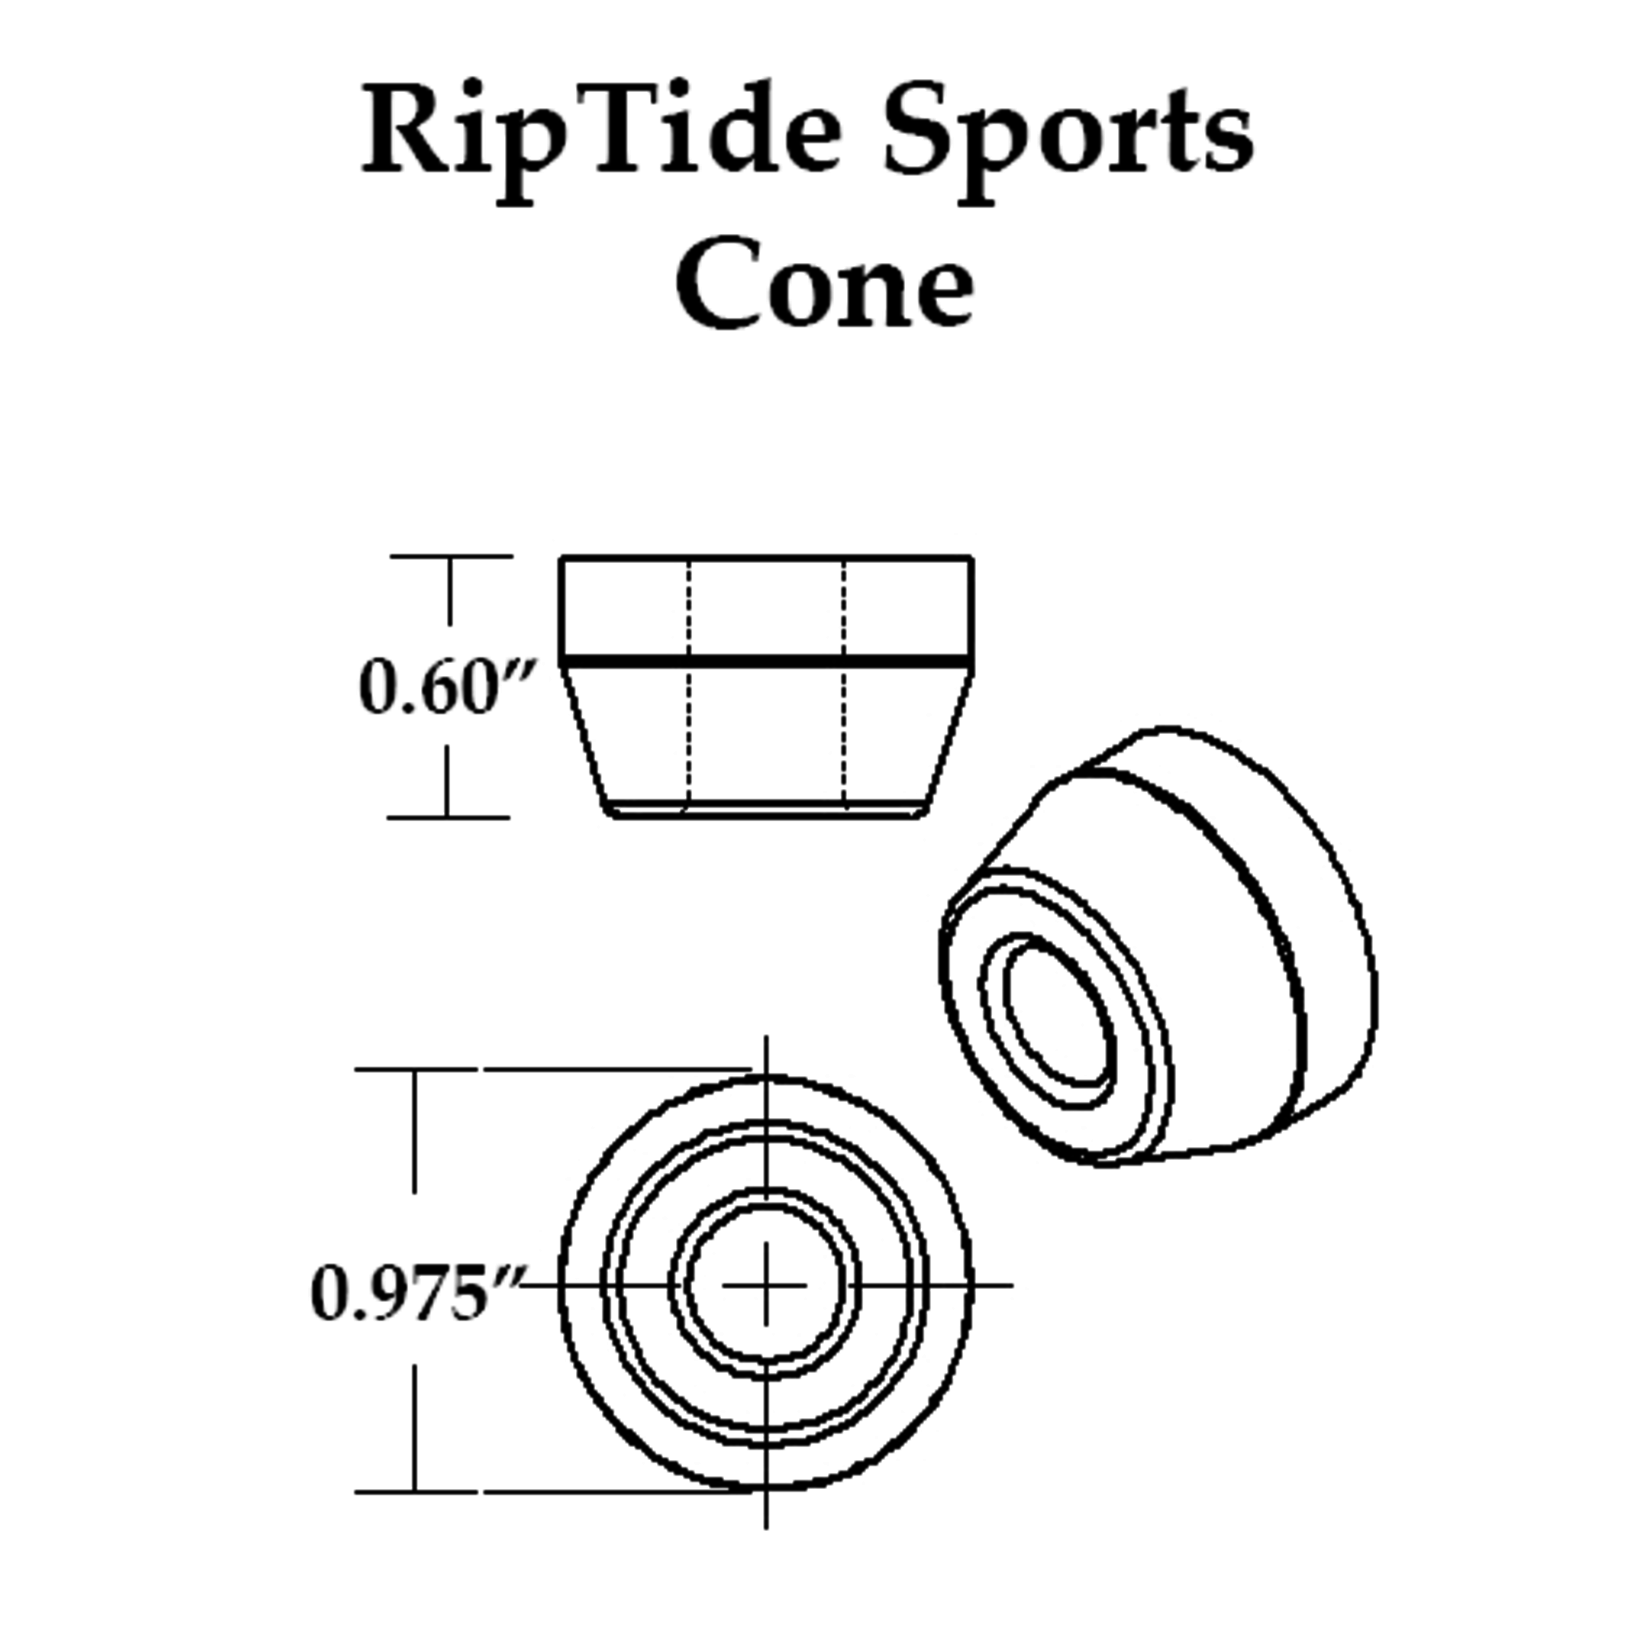 Riptide Sports APS Cone